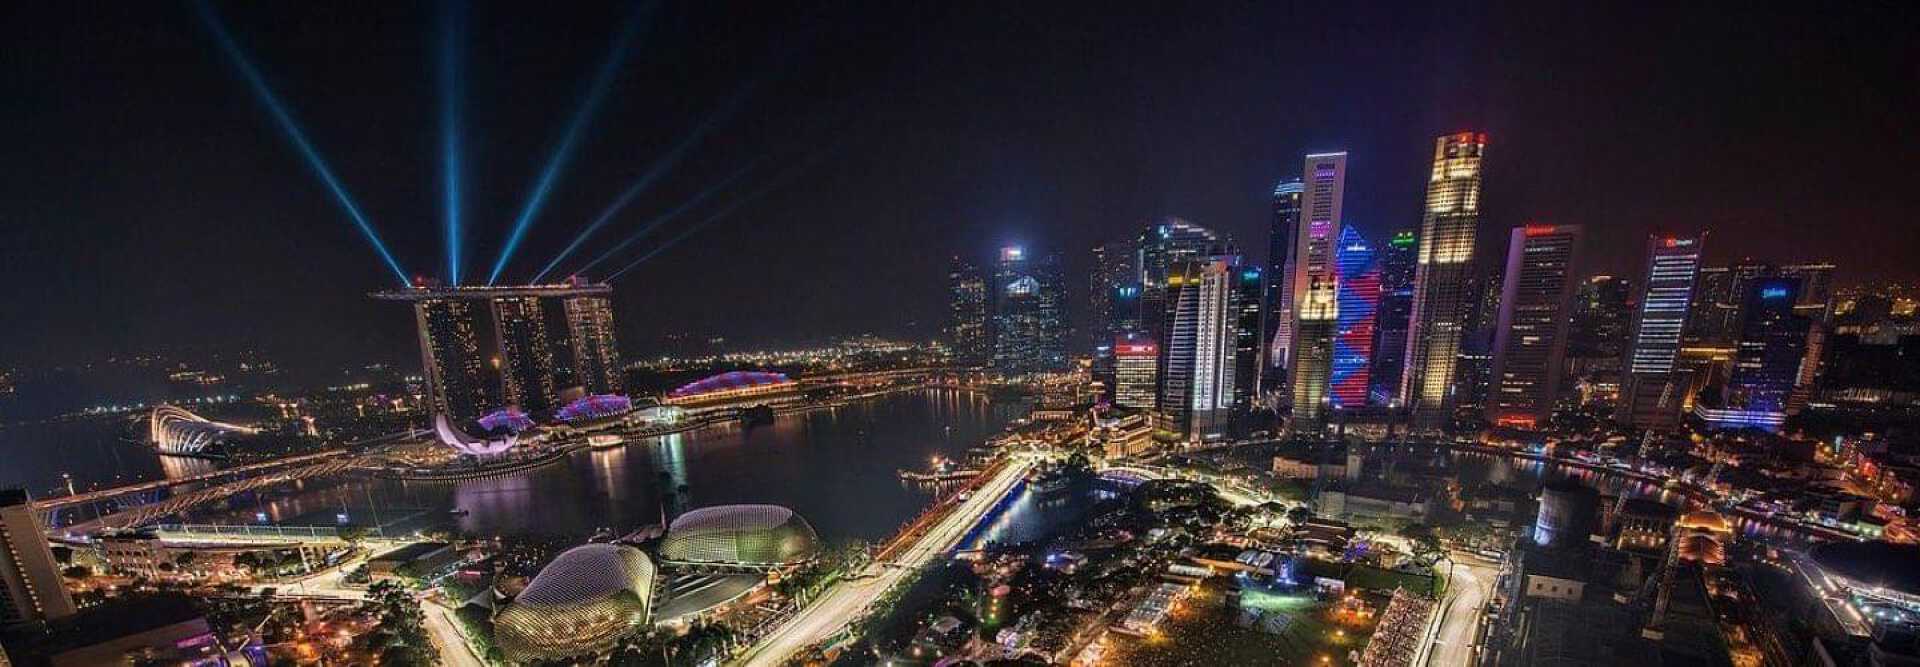 Vue aérienne du circuit de Formule 1 du Grand Prix de Singapour  avec gratte-ciels